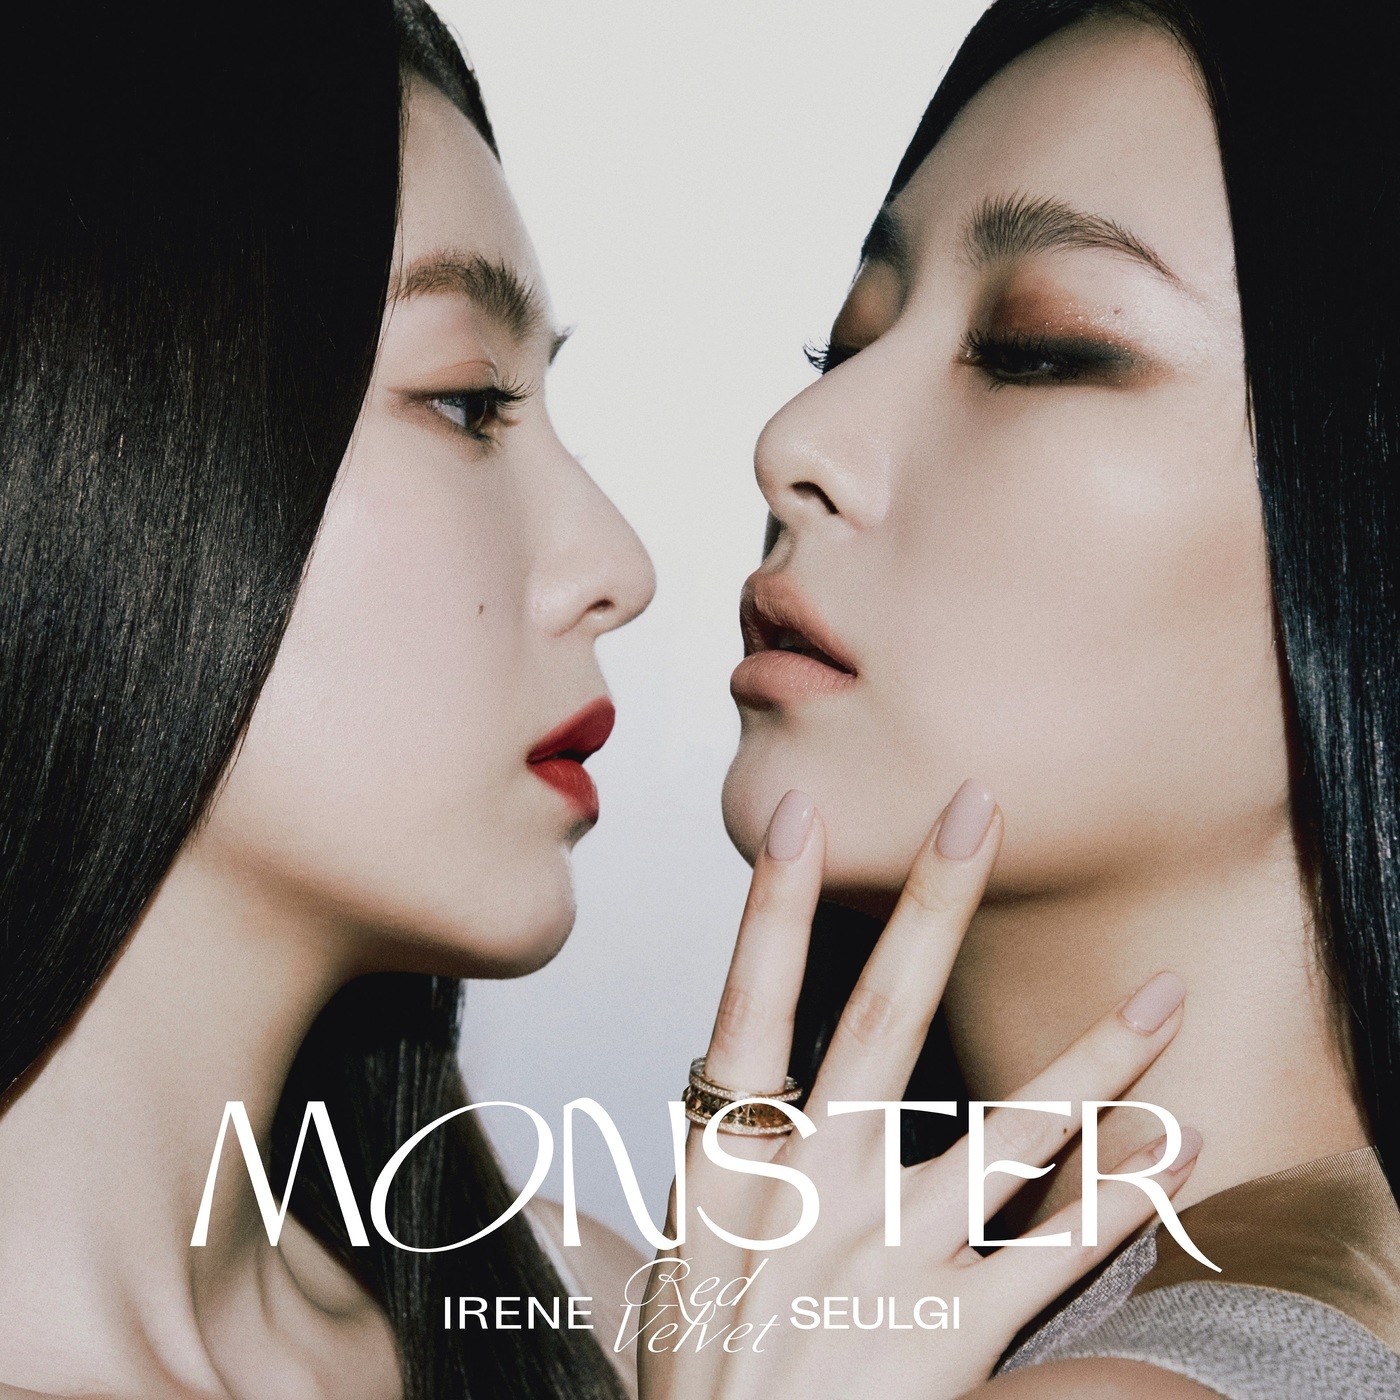 Red Velvet – IRENE & SEULGI – Monster [FLAC + MP3 320 / WEB] [2020.07.06]